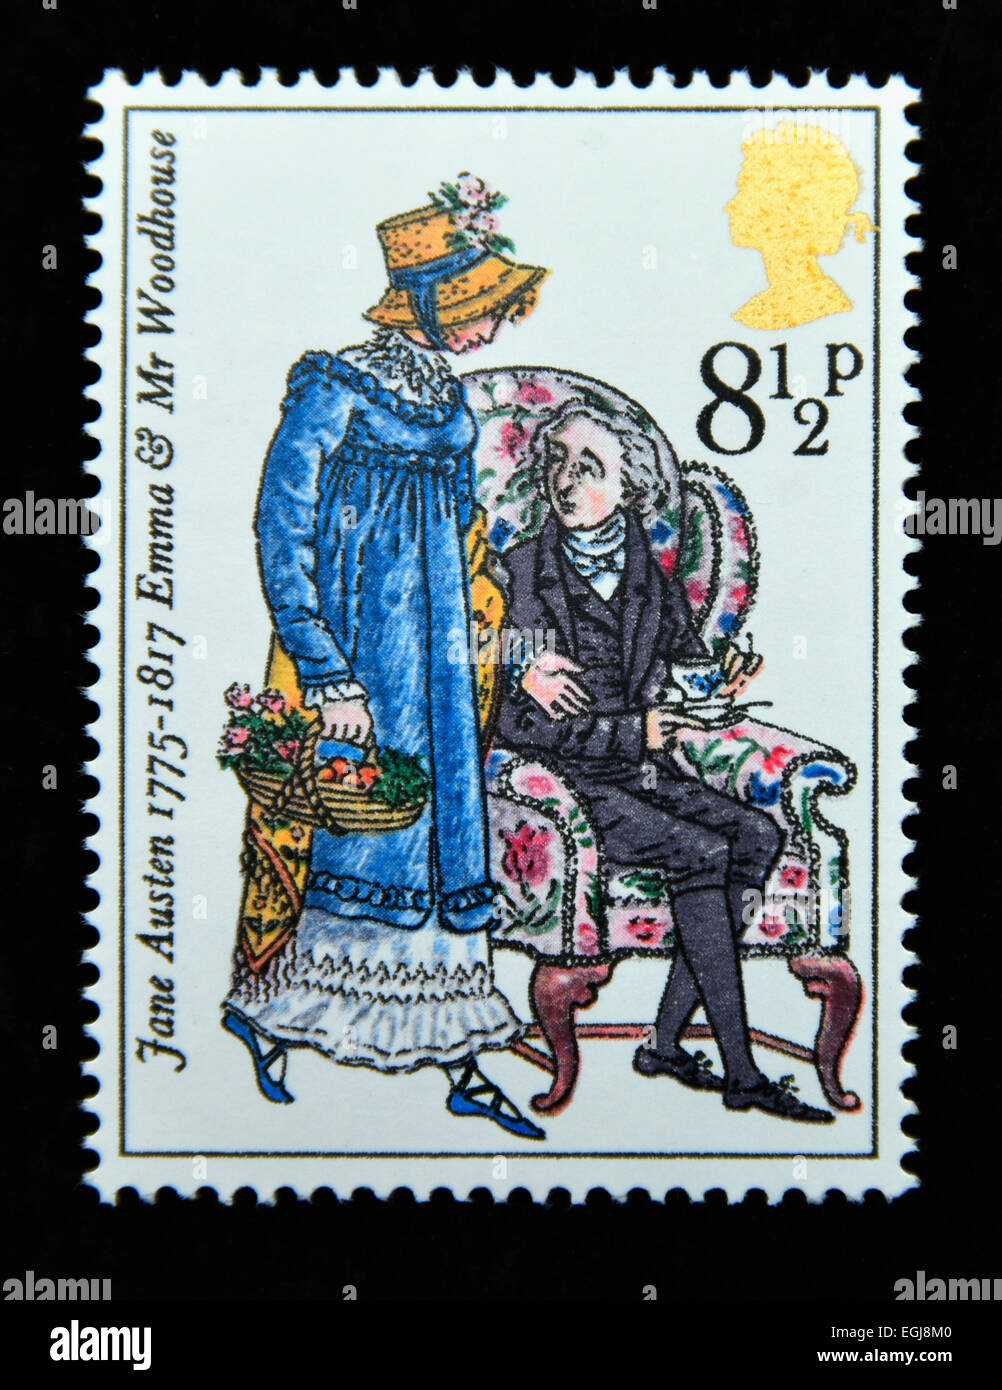 Briefmarke. Great Britain. Königin Elizabeth II. 1975. Geburt Zweihundertjahrfeier von Jane Austen (Schriftsteller). Stockfoto